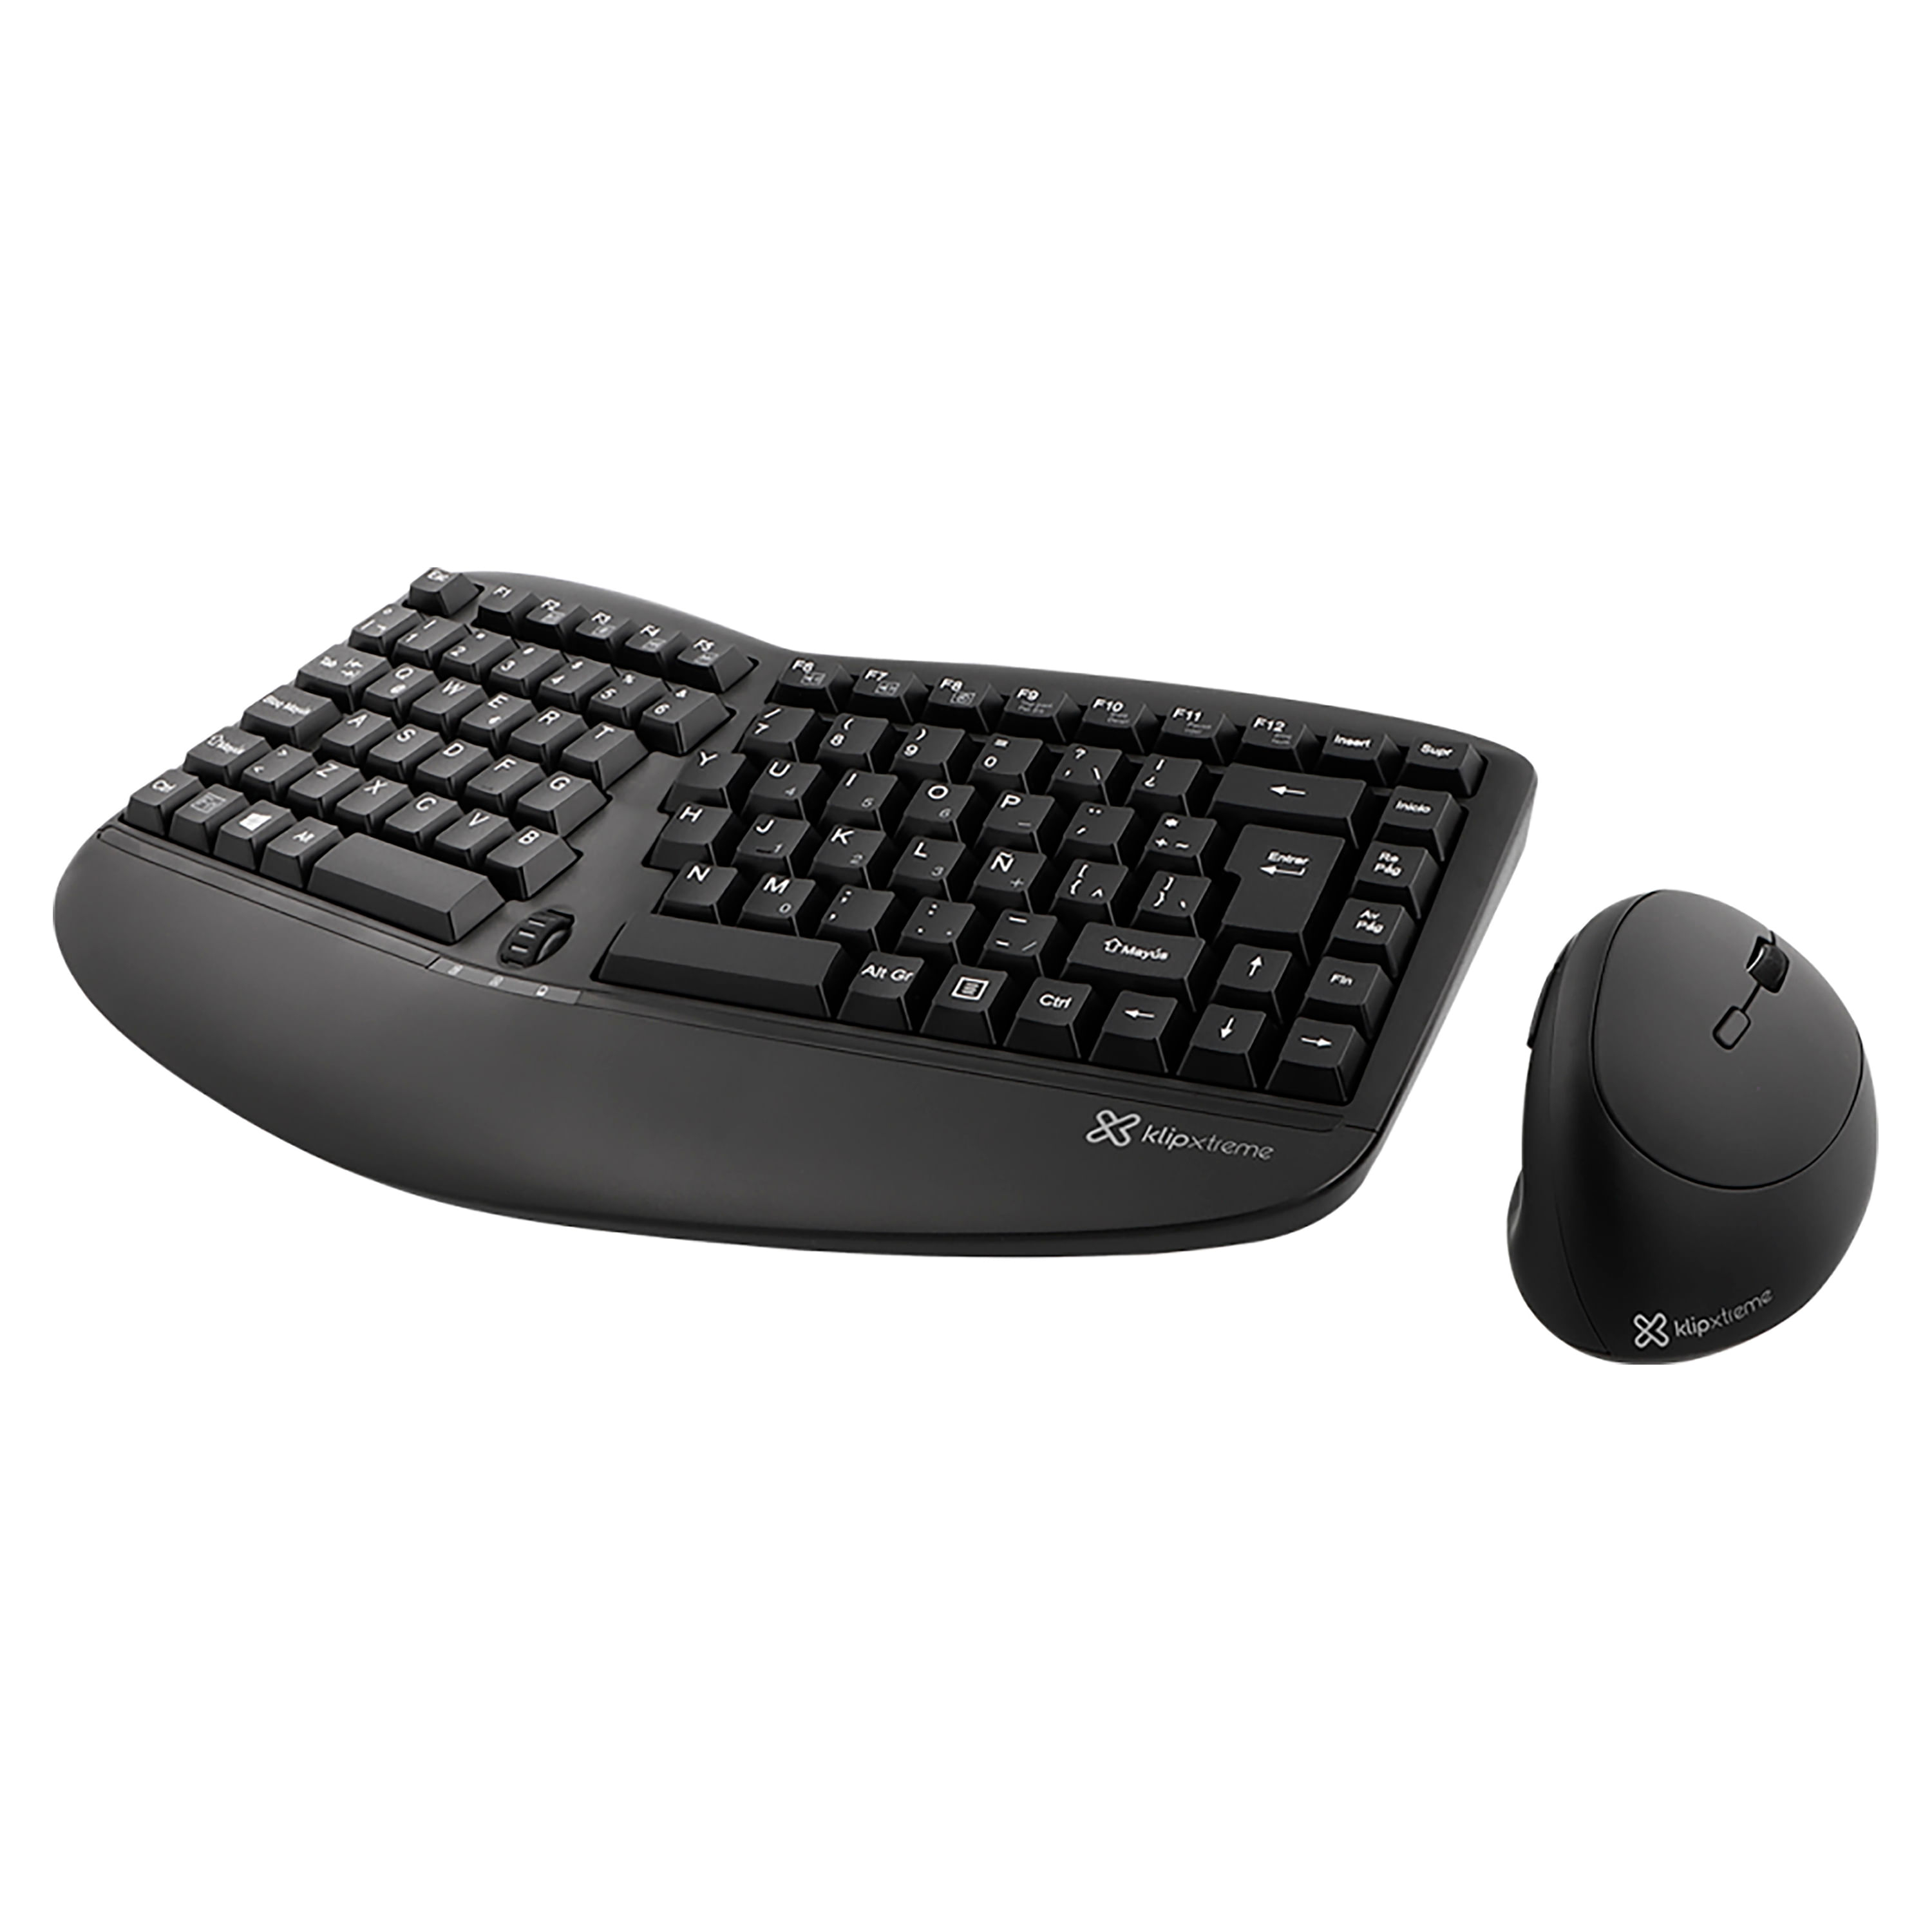 Combo de mouse y teclado